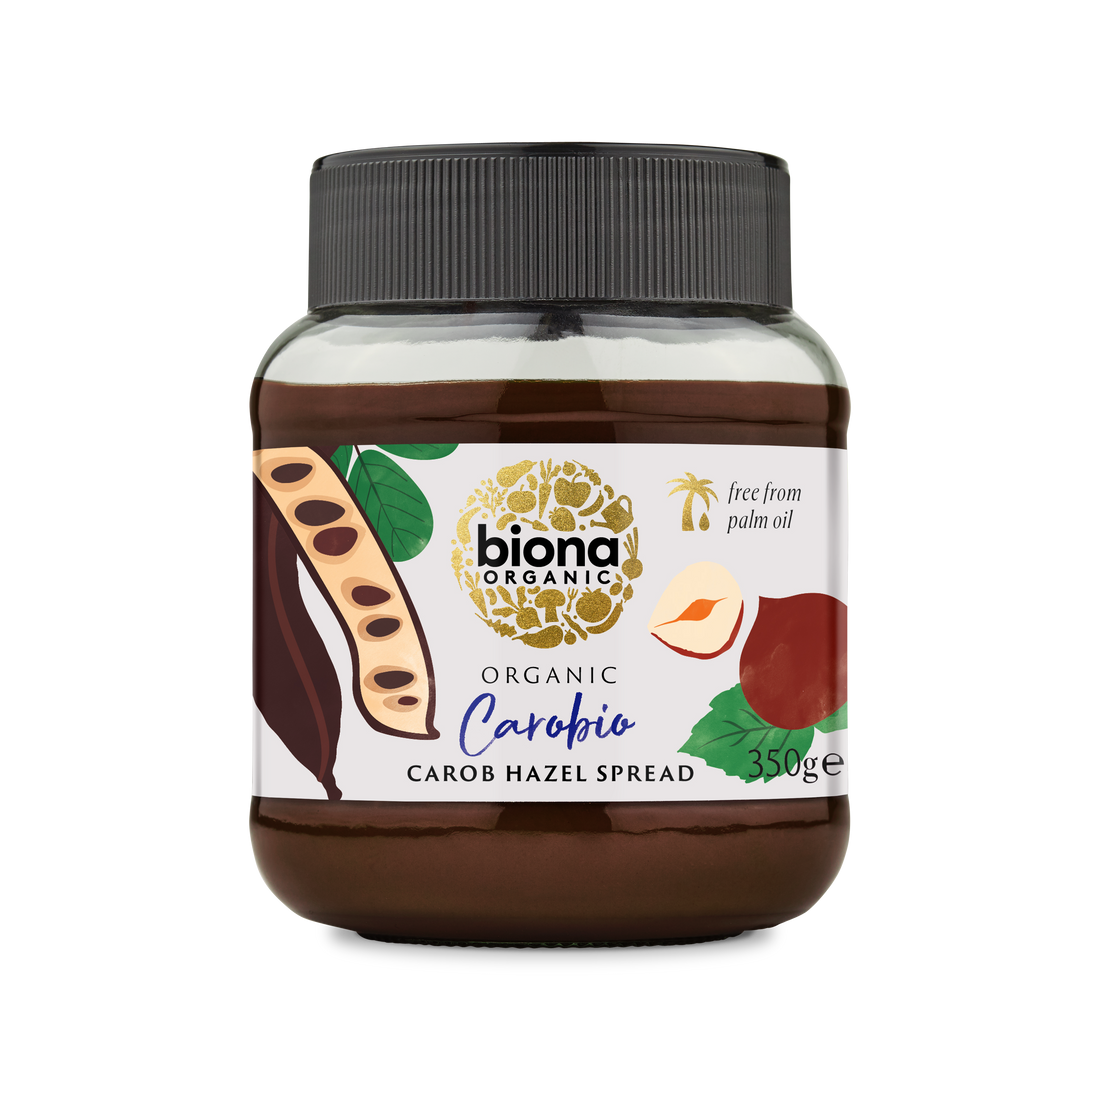 Biona Organic Carobio - Carob Hazel Spread 350g